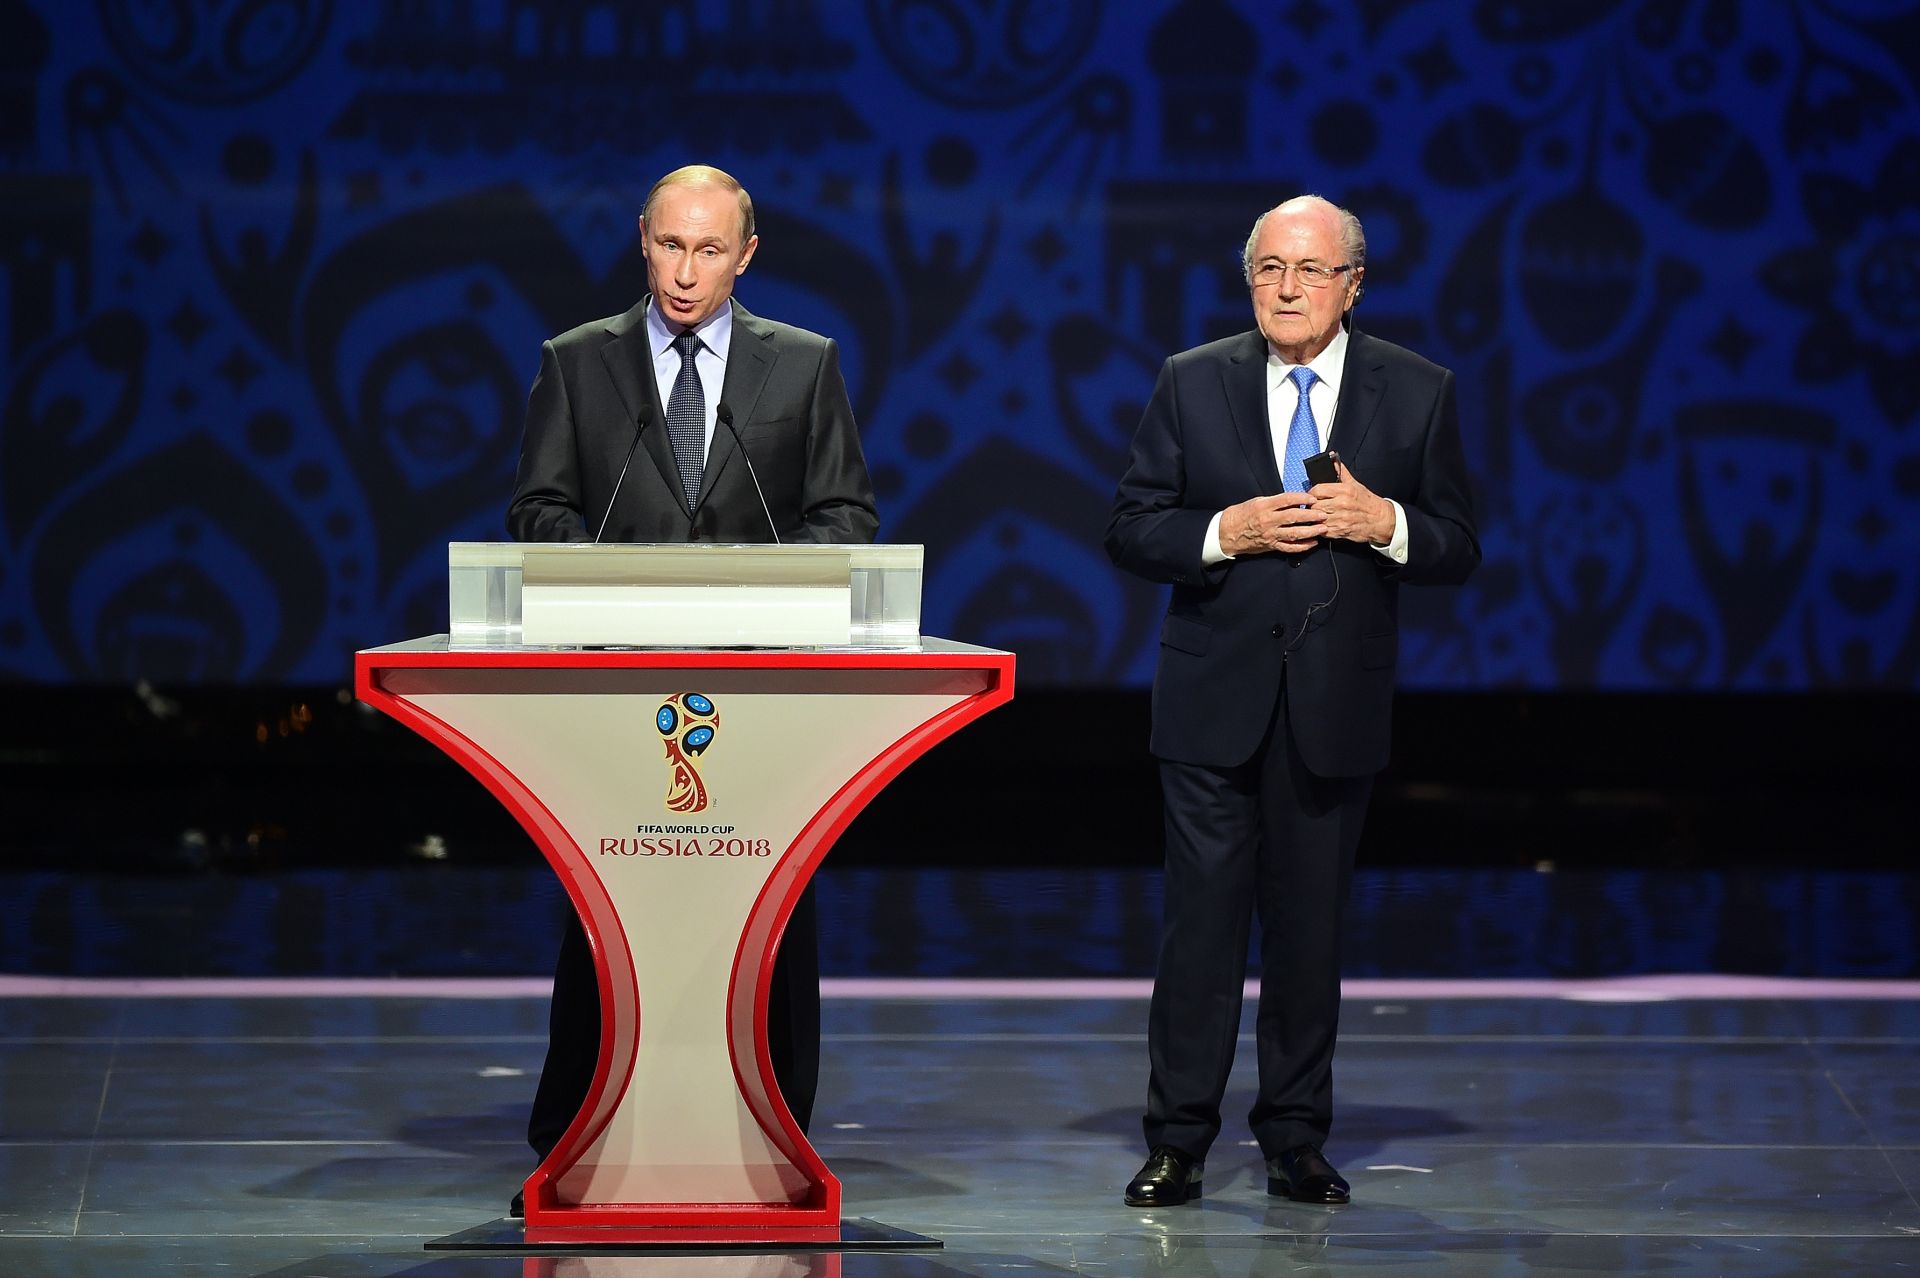 25 юли 2015 г. - Владимир Путин говори в присъствието на президента на ФИФА Сеп Блатер по време на предварителния жребий за Световното първенство по футбол през 2018 г. в Русия в двореца Константин в Санкт Петербург.